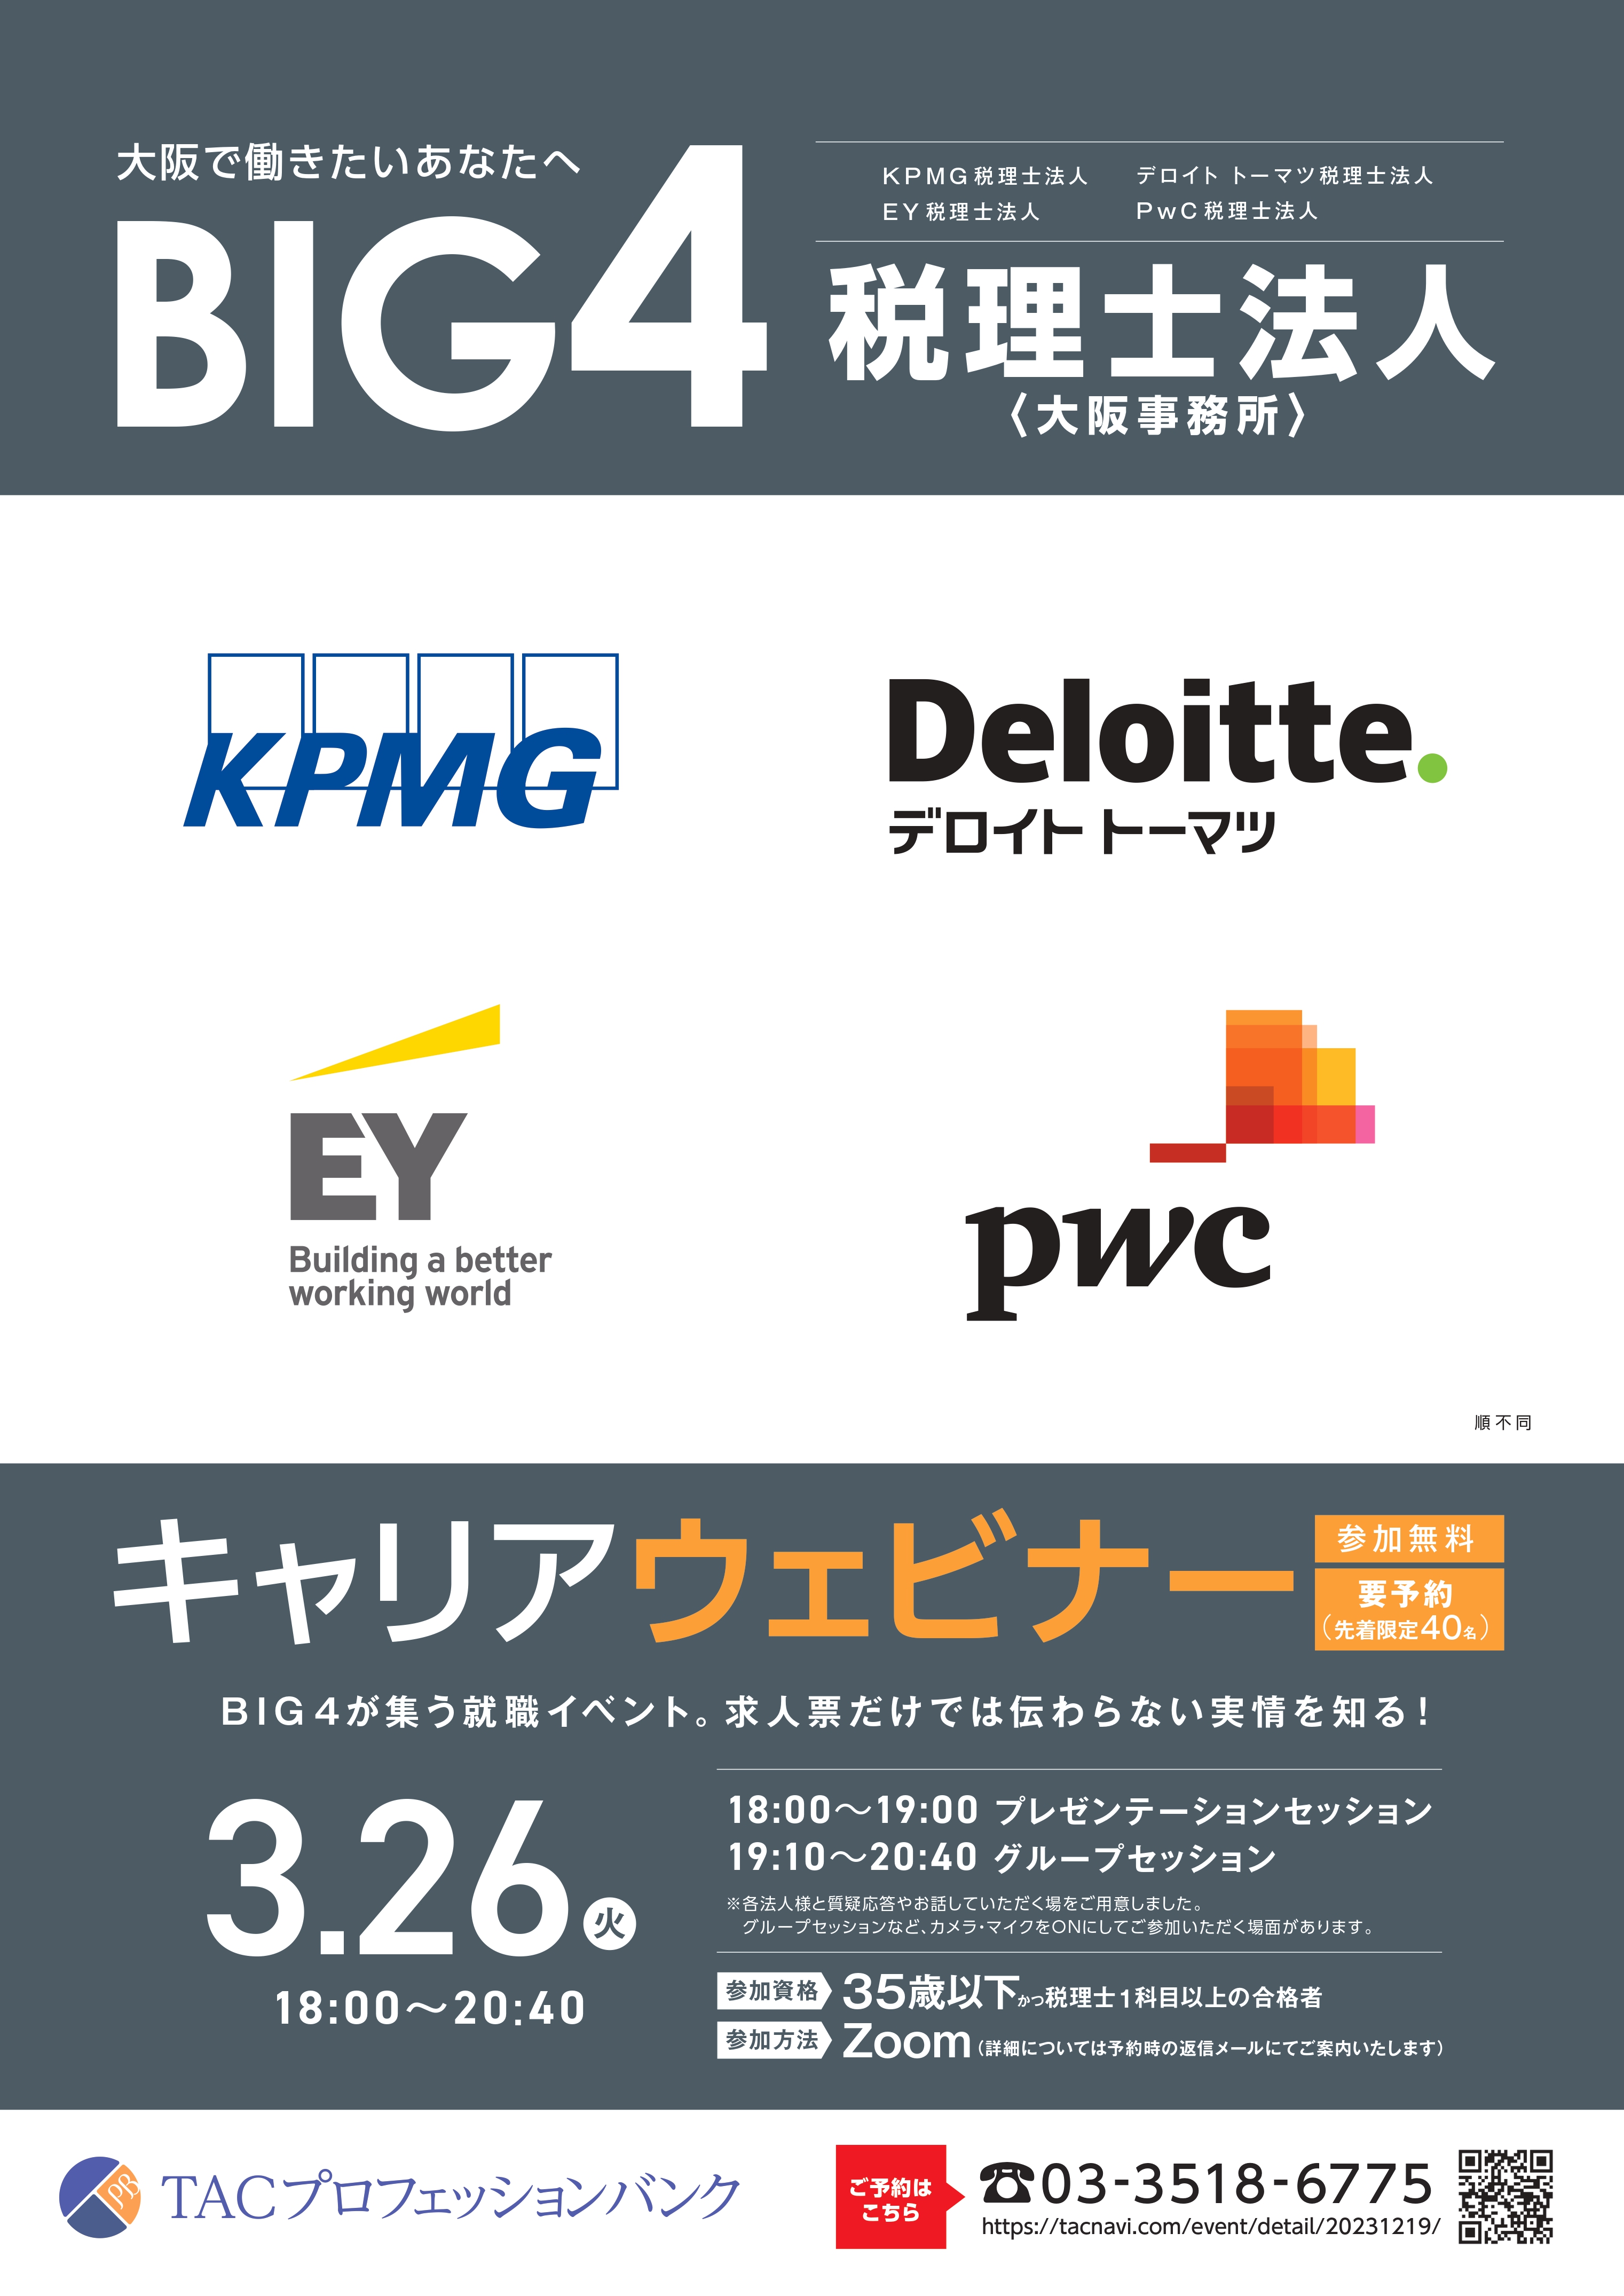 【大阪事務所】税理士法人 BIG4キャリアウェビナー